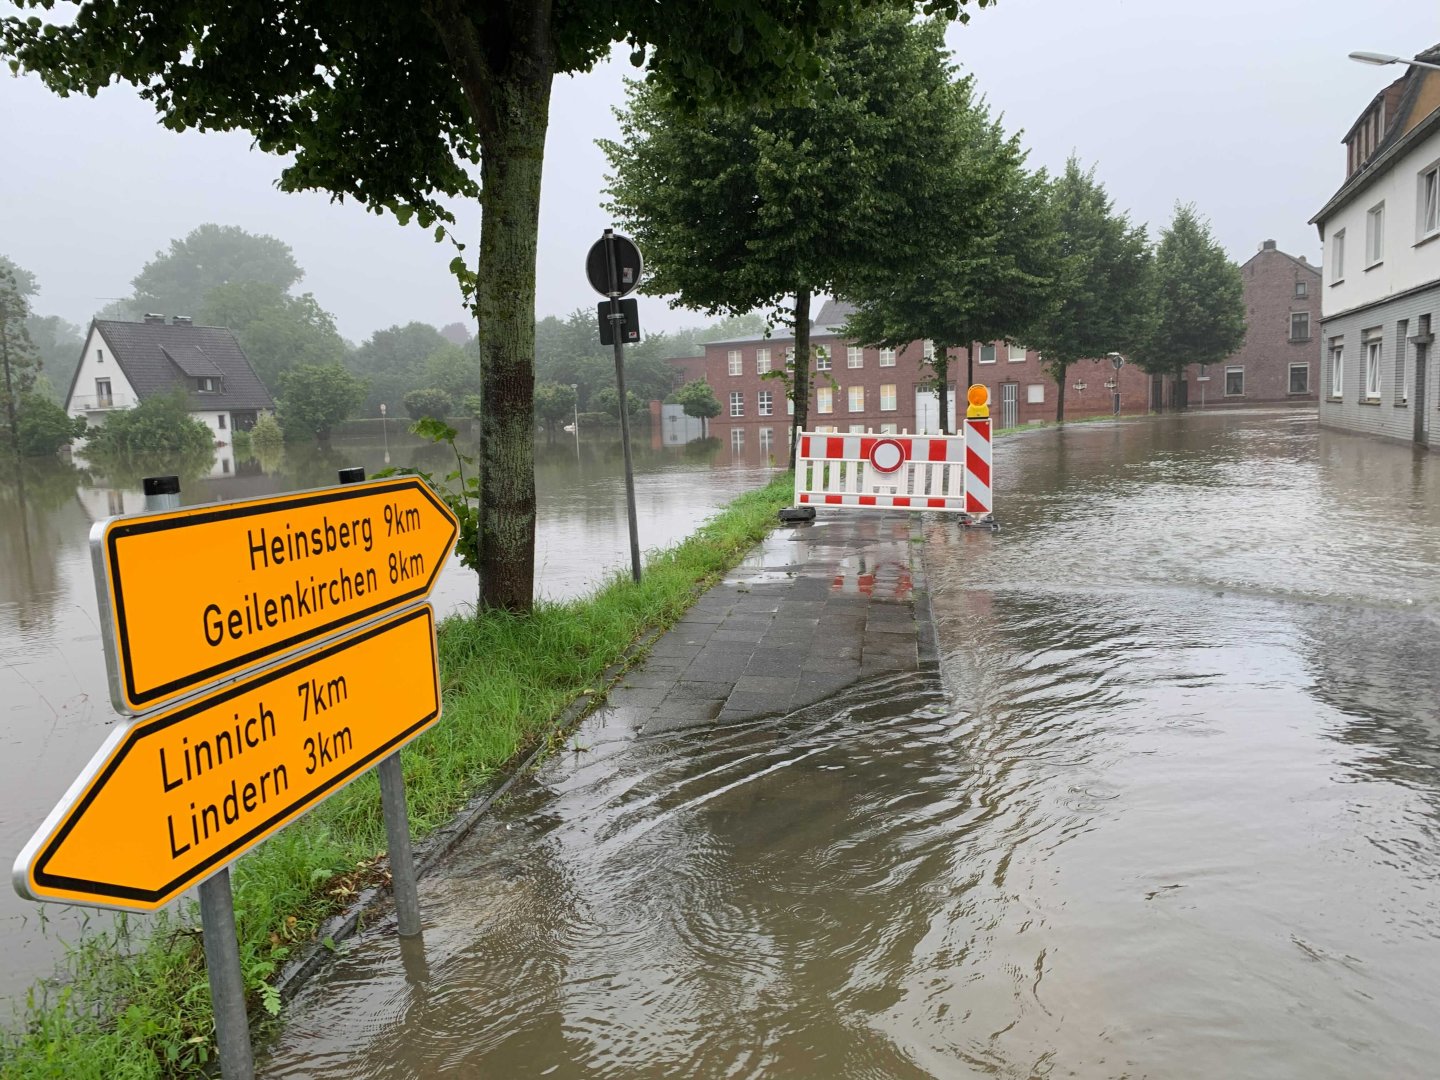 Наводнение в Германии превратило улицы городов в горные реки, фото - Bild